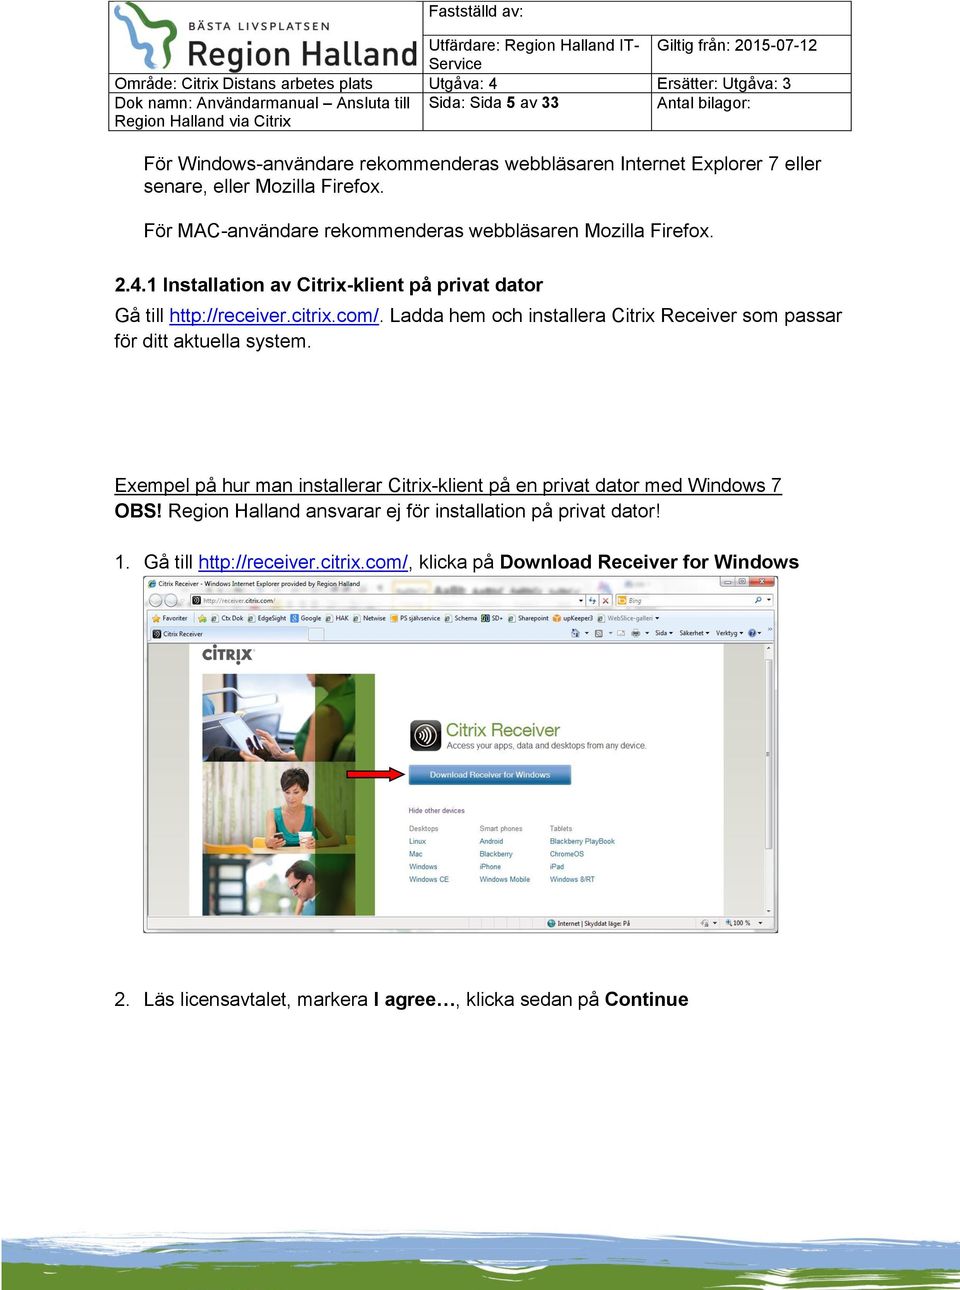 Ladda hem och installera Citrix Receiver som passar för ditt aktuella system. Exempel på hur man installerar Citrix-klient på en privat dator med Windows 7 OBS!